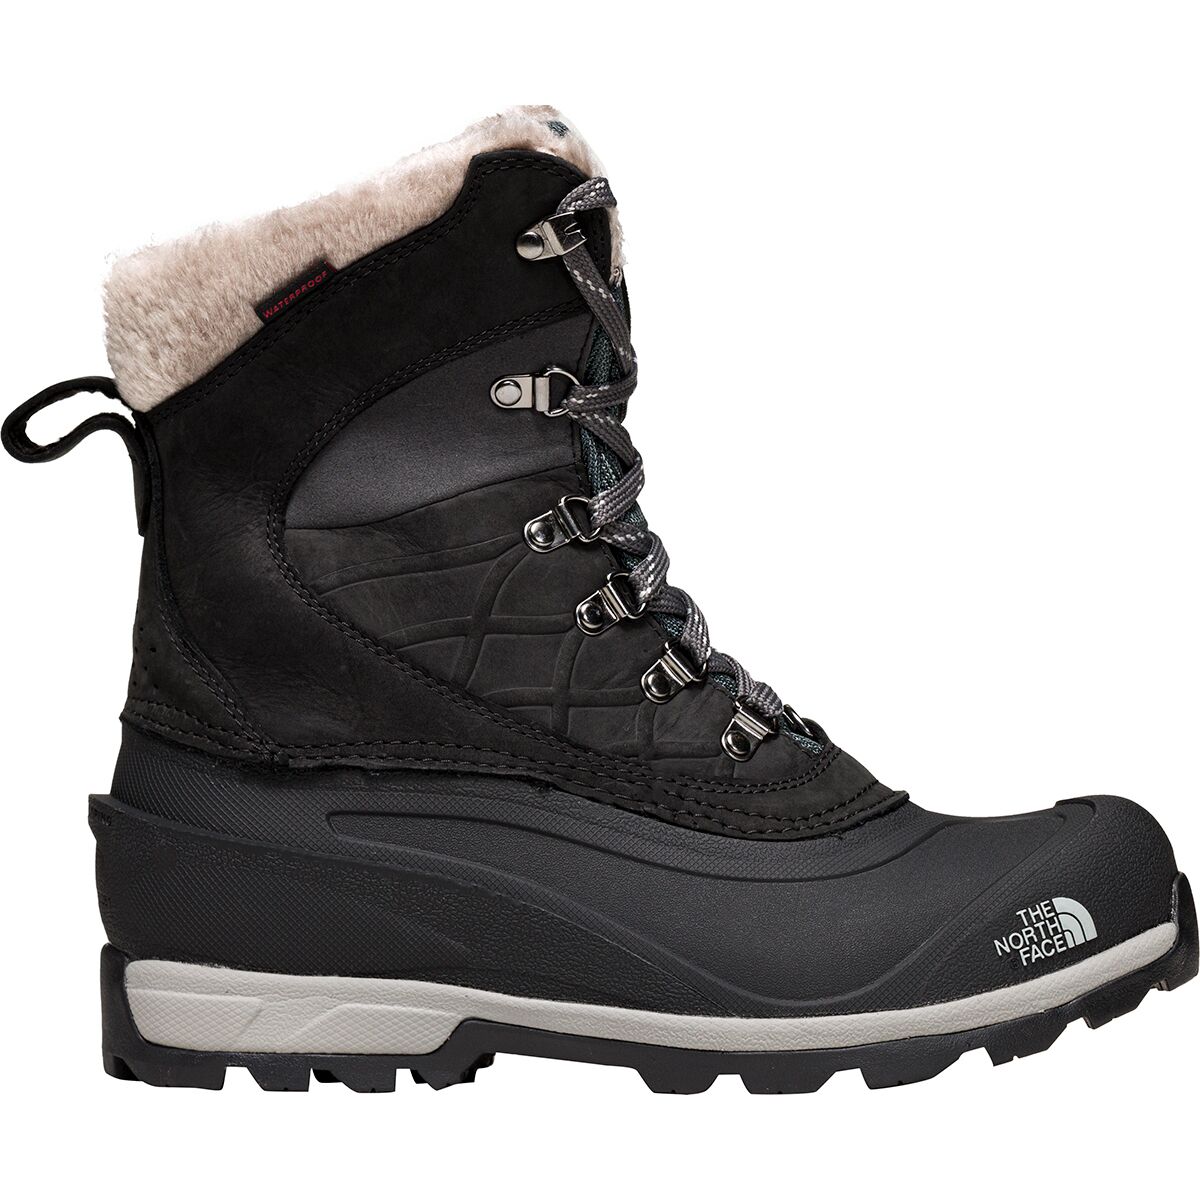 Chilkat 400 Boot - Women